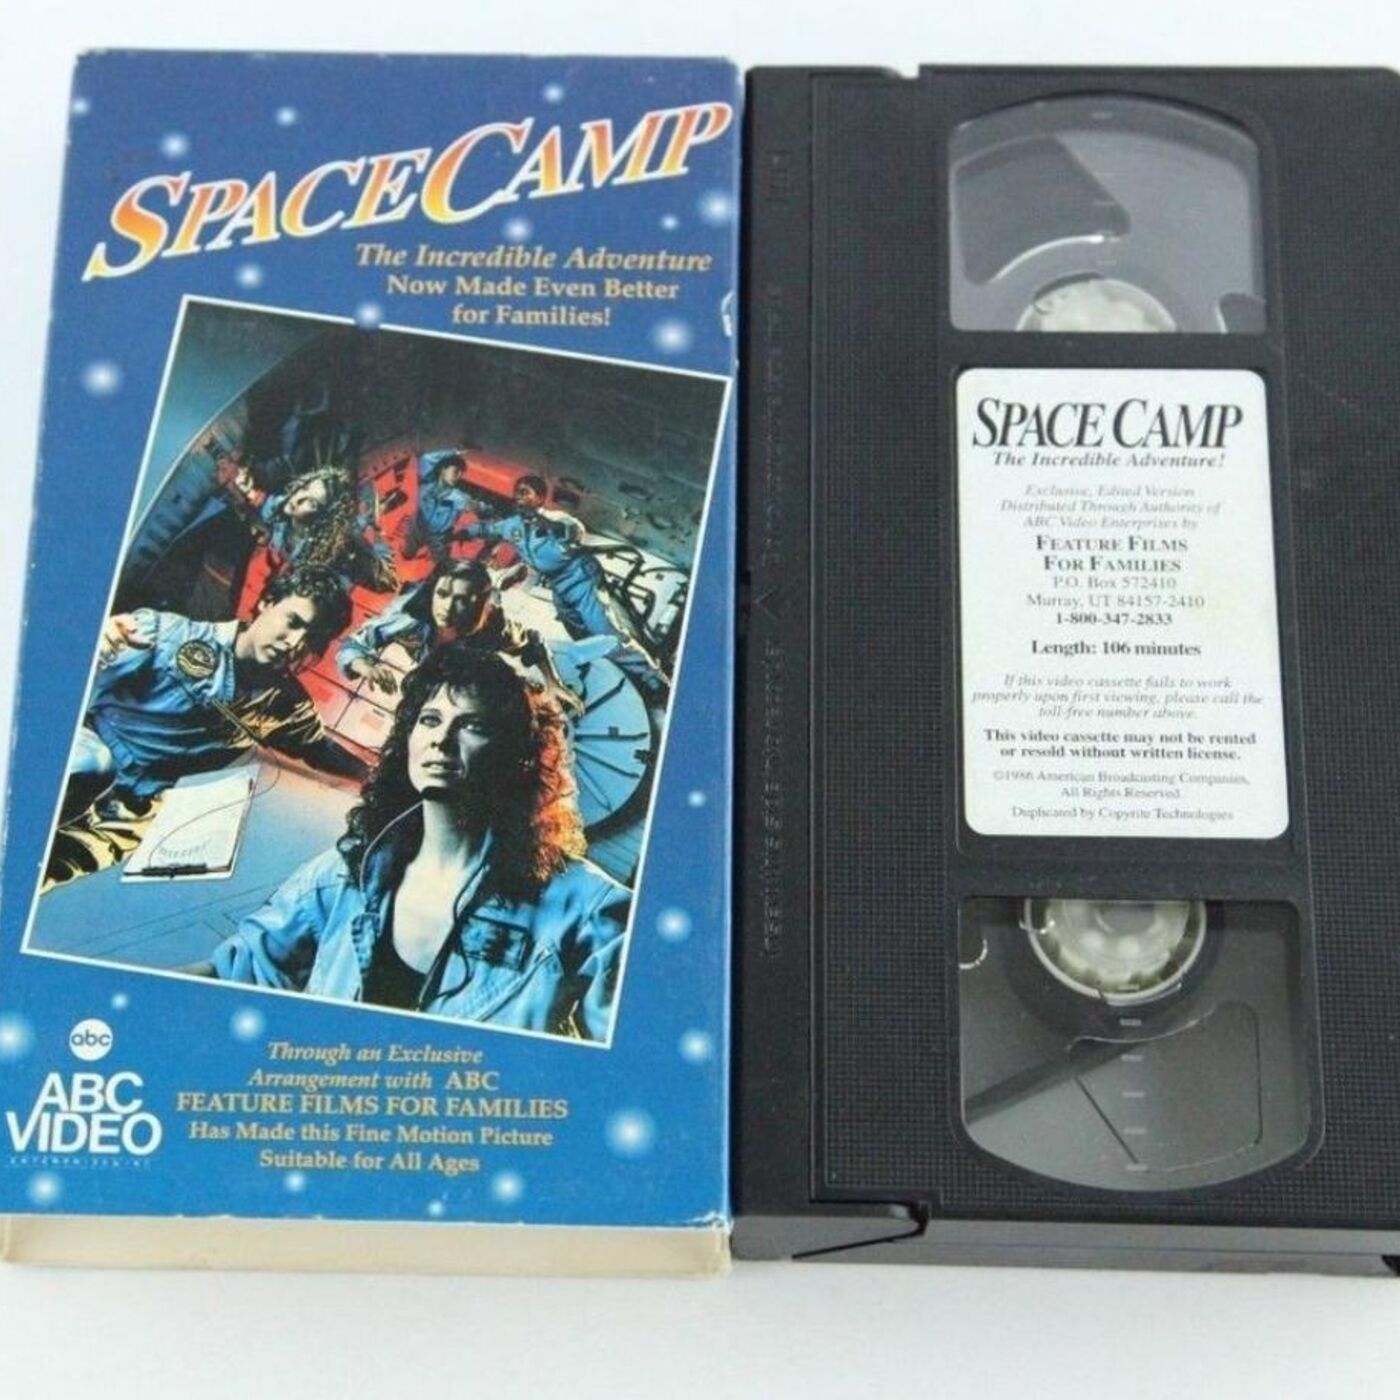 1986 - SpaceCamp Image